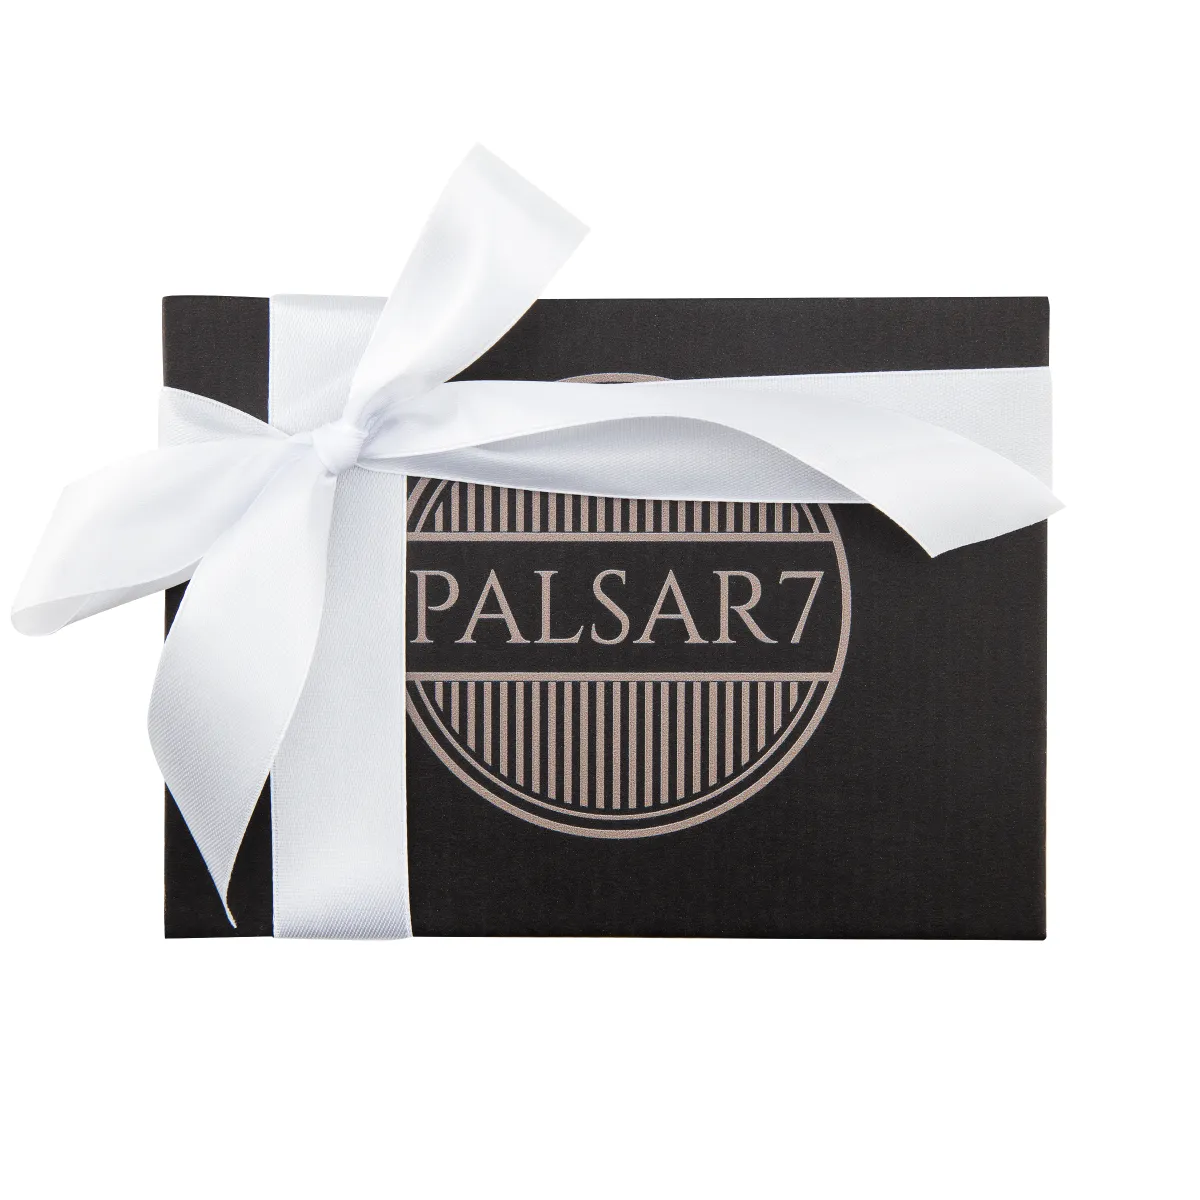 Palsar7 Galvanická žehlička na obličej 5v1 